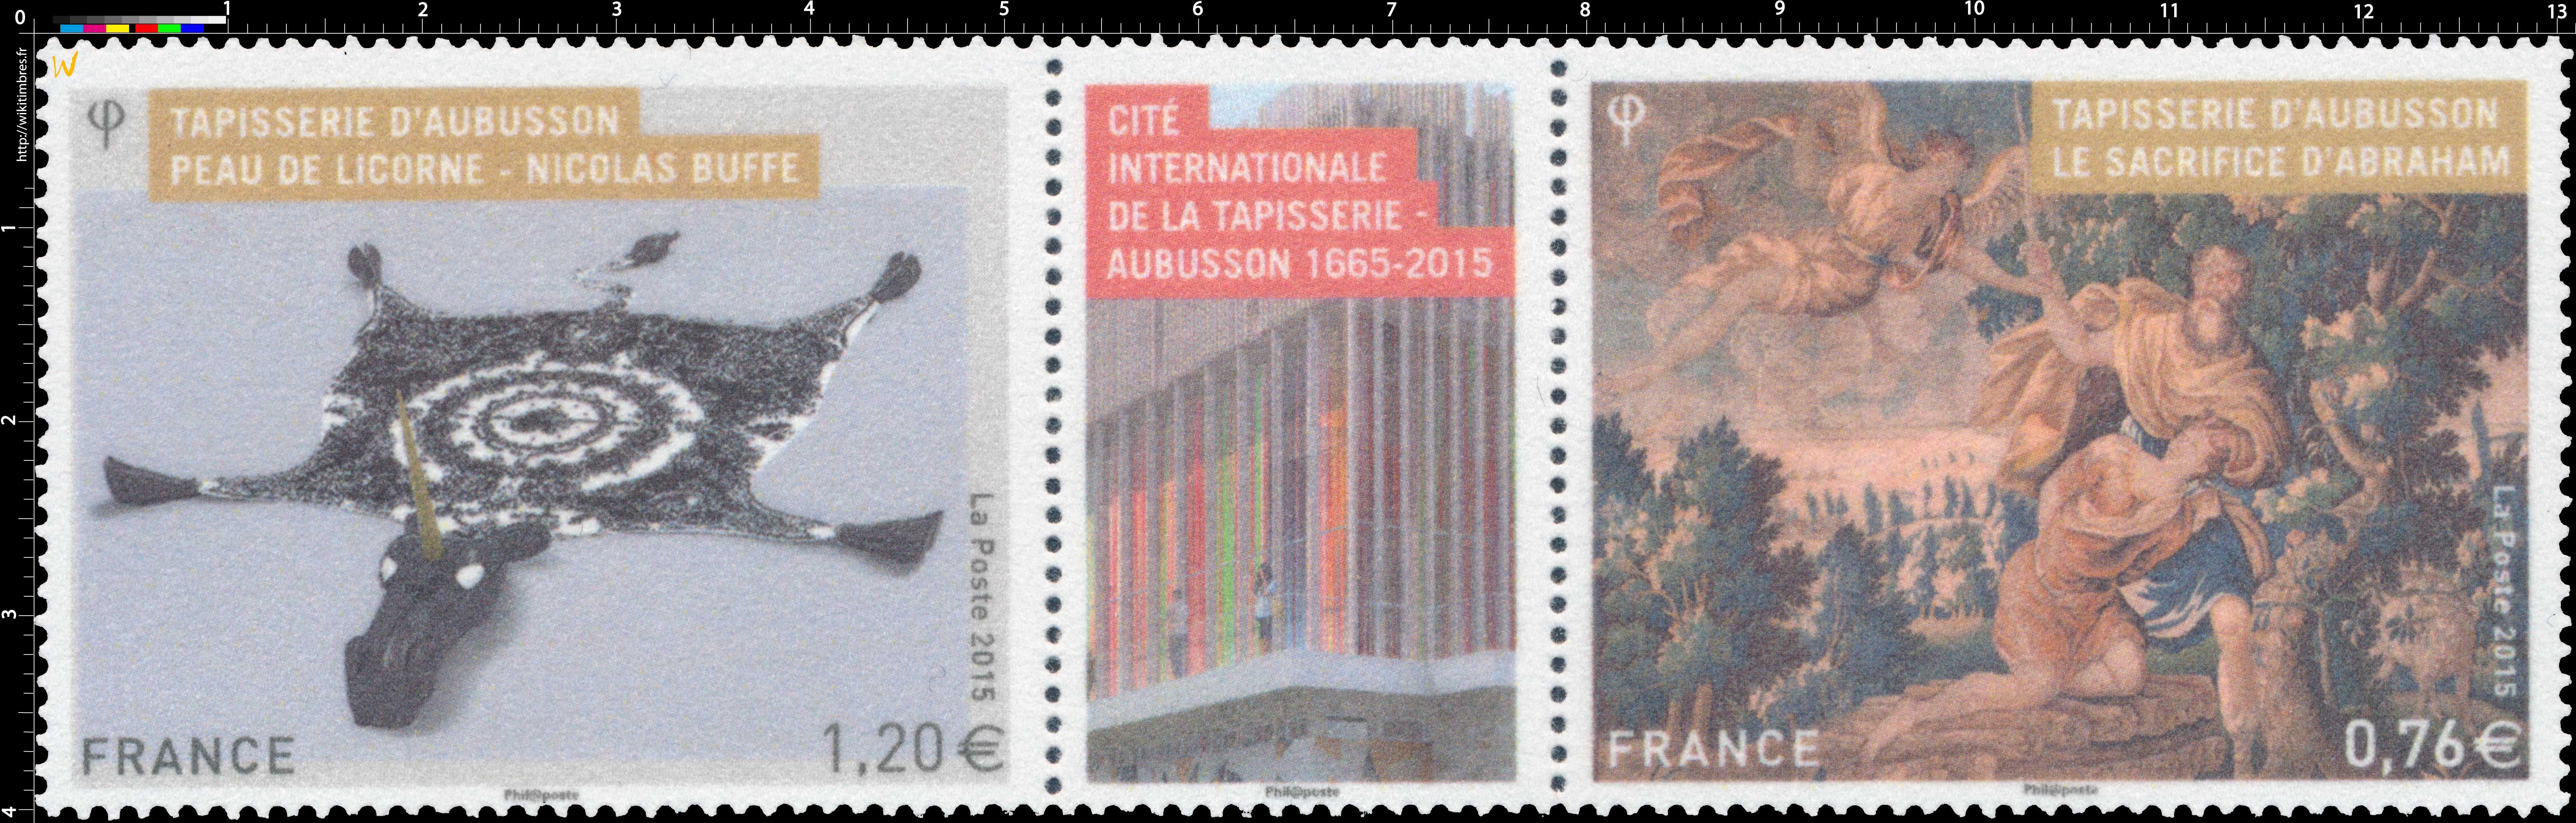 2015 Cité Internationale de la Tapisserie d'Aubusson 1665 - 2015